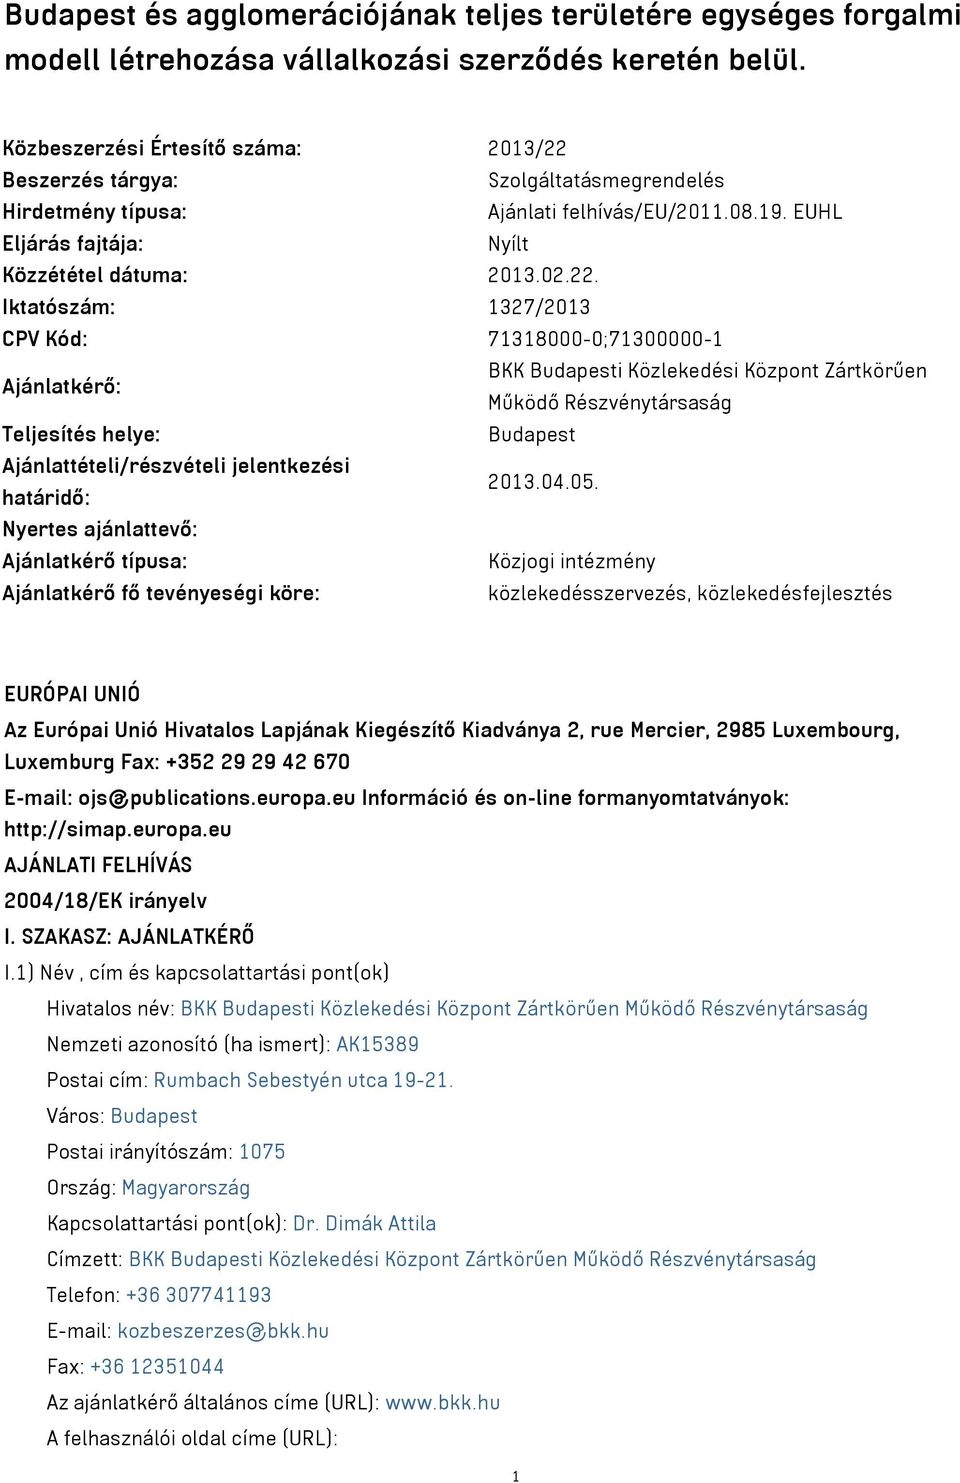 Beszerzés tárgya: Szolgáltatásmegrendelés Hirdetmény típusa: Ajánlati felhívás/eu/2011.08.19. EUHL Eljárás fajtája: Nyílt Közzététel dátuma: 2013.02.22.